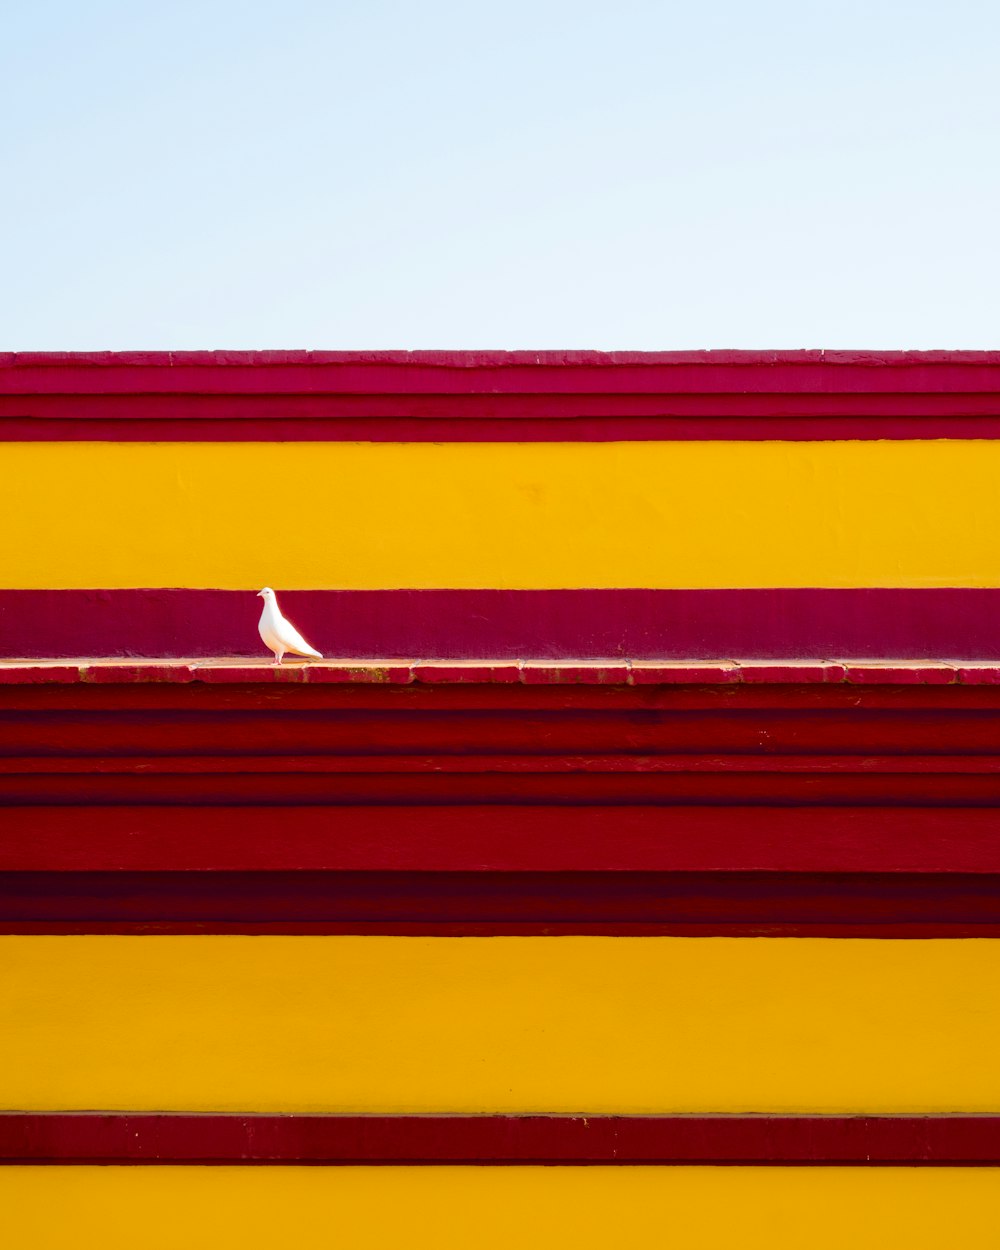 Un uccello bianco seduto sulla cima di un edificio rosso e giallo